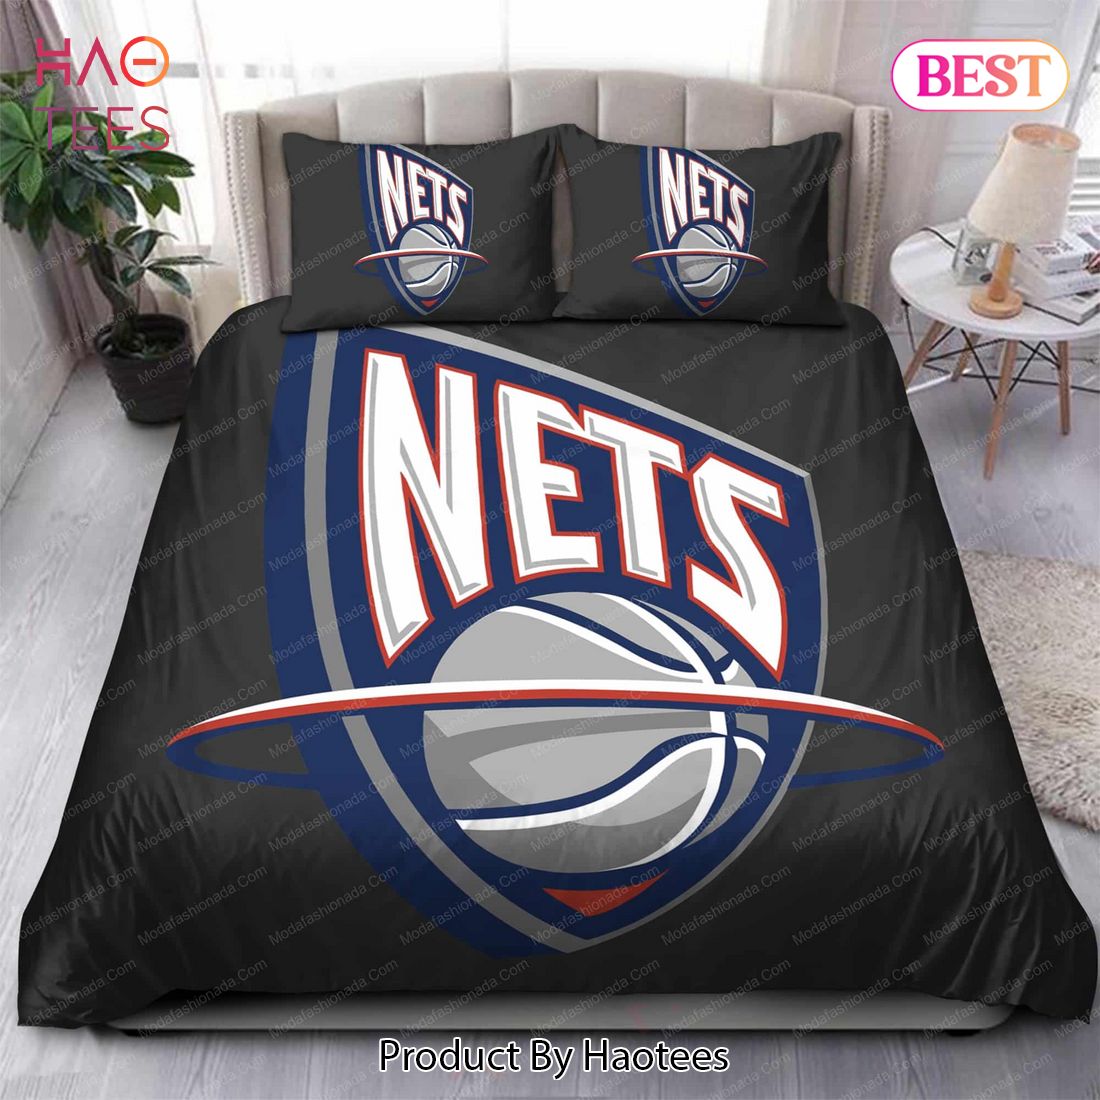 Buy 1997-2012 Logo Brooklyn Nets NBA 142 Bedding Sets Bed Sets, Bedroom Sets, Comforter Sets, Duvet Cover, Bedspread